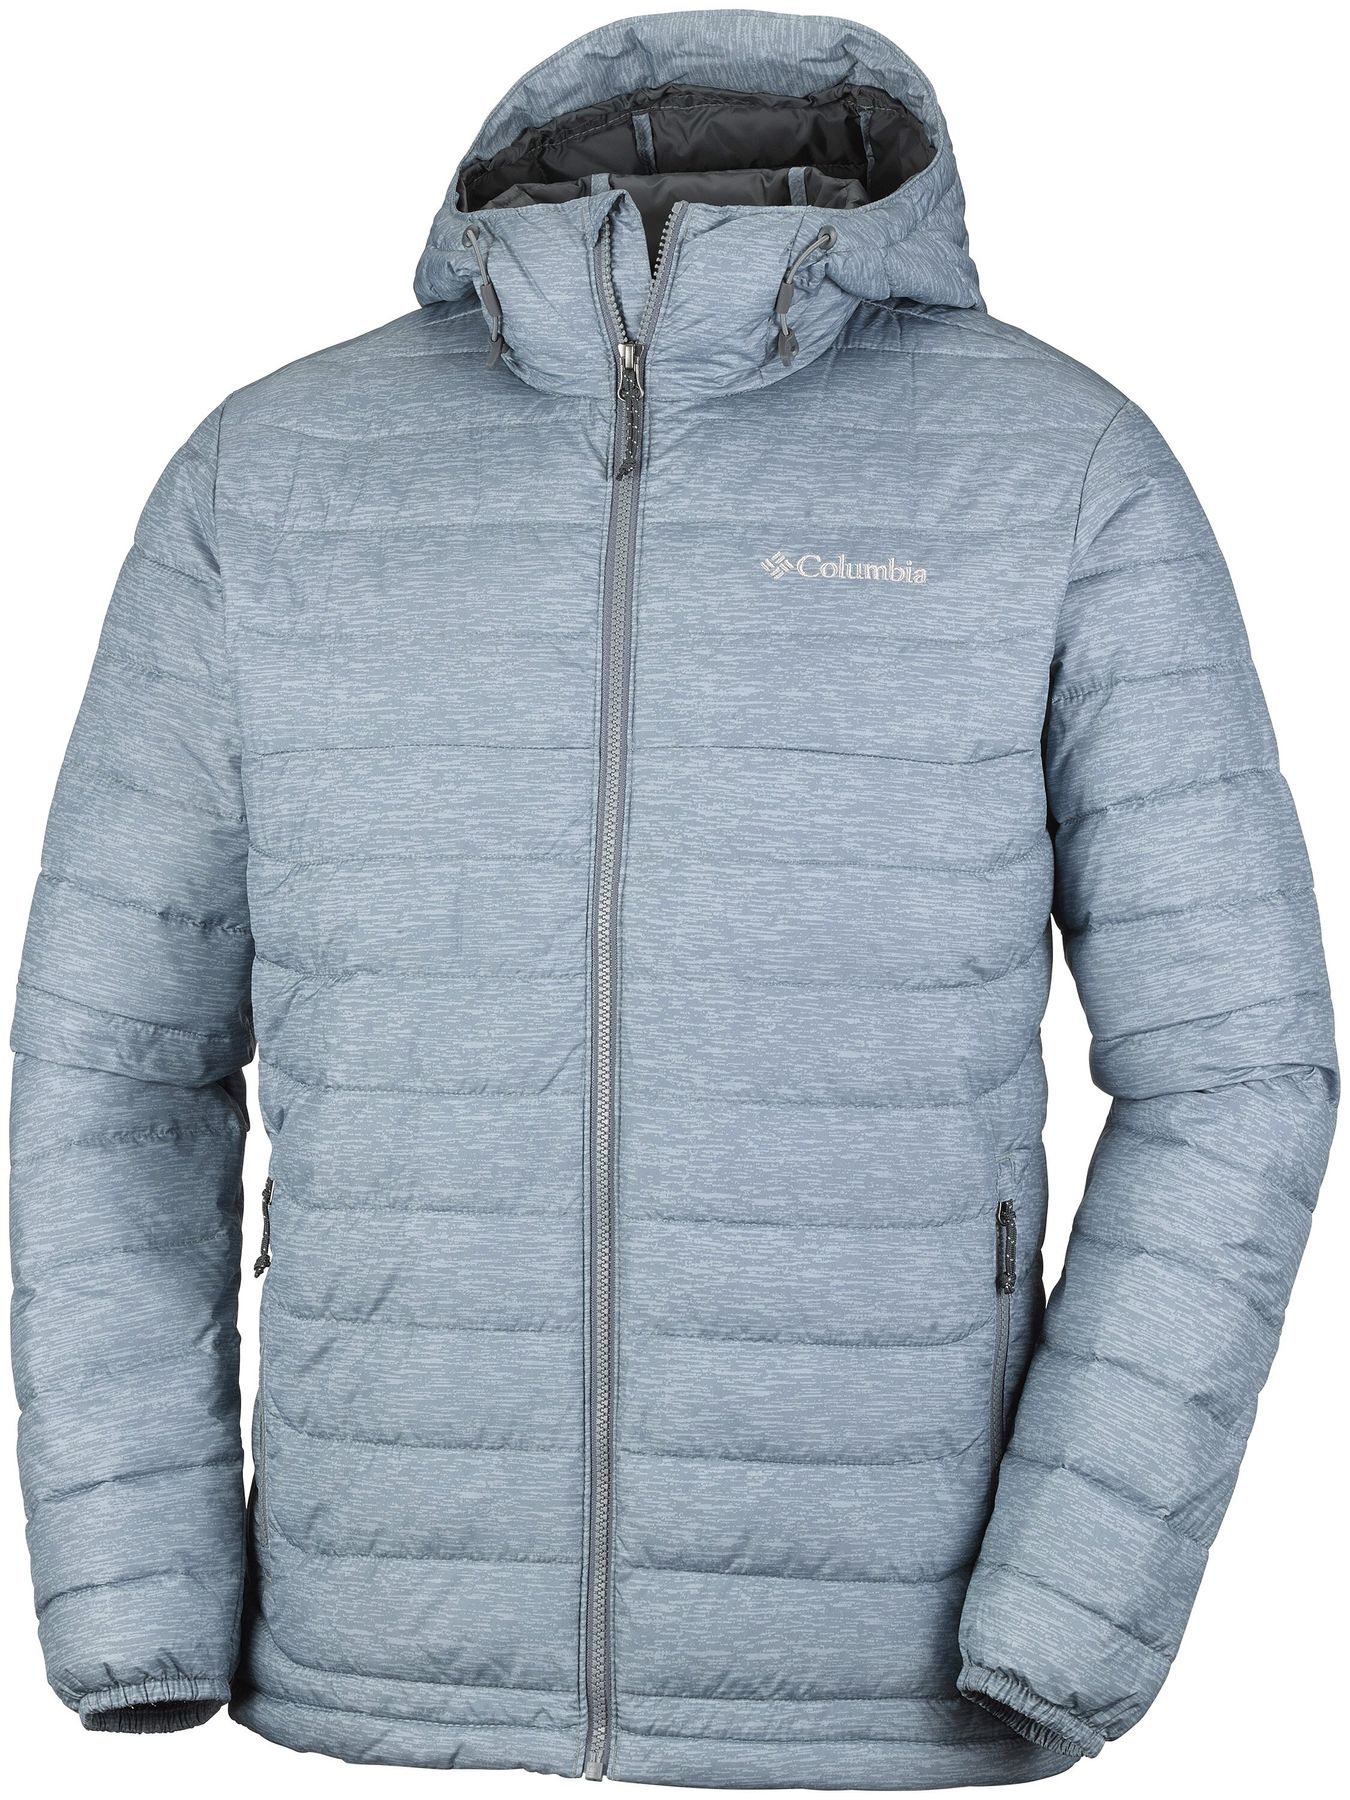  зимние мужские куртки в интернет магазине Европа Спорт